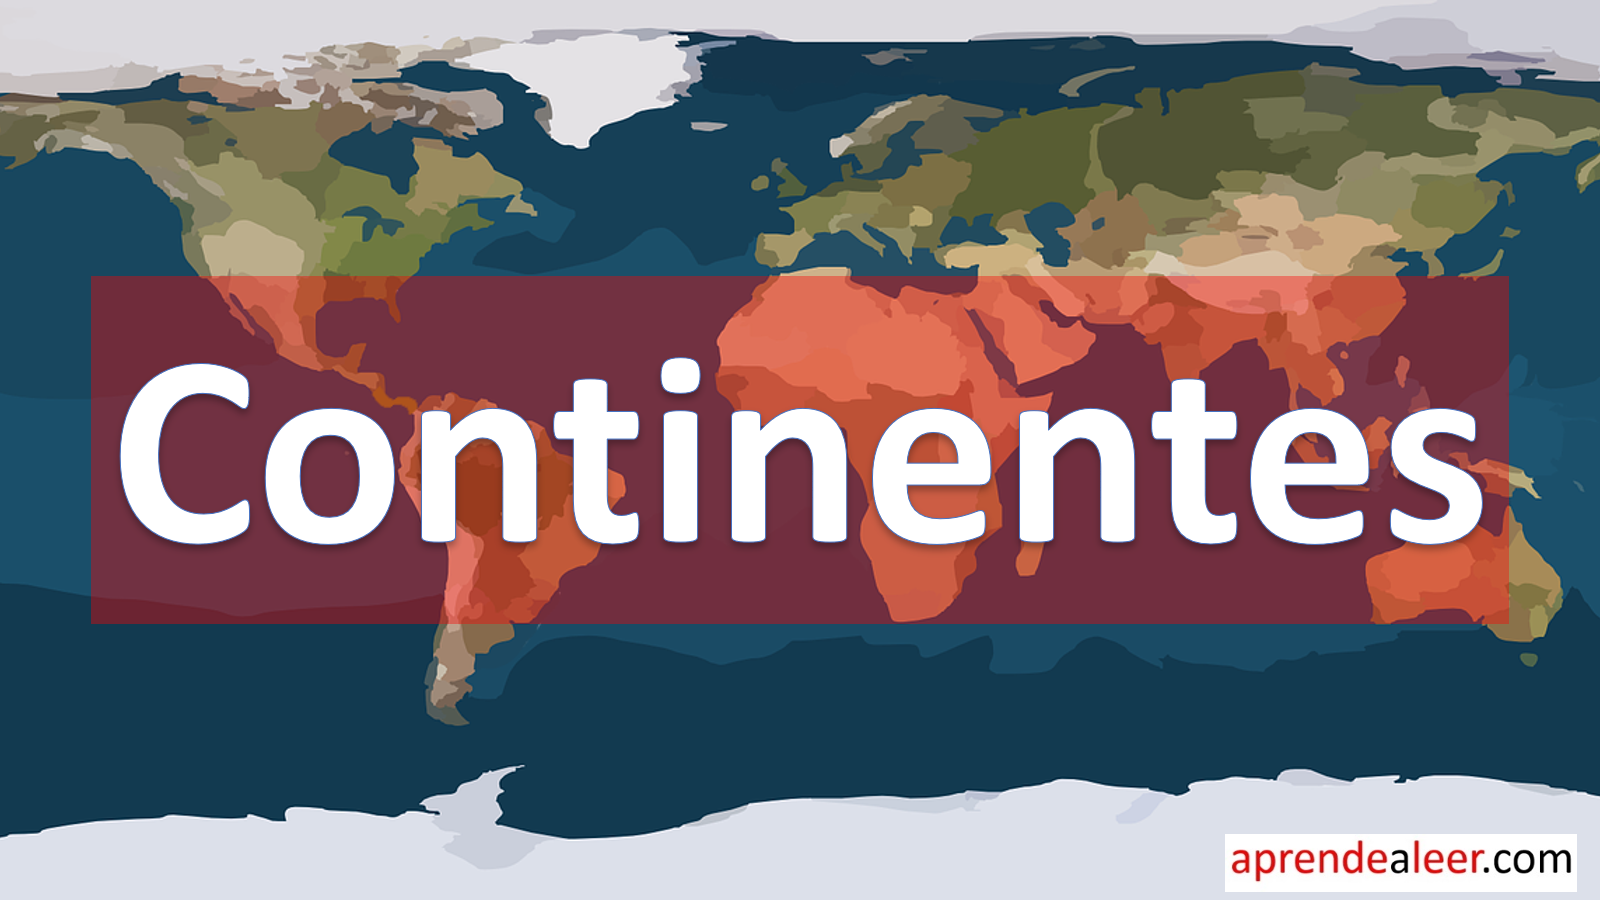 Los Continentes